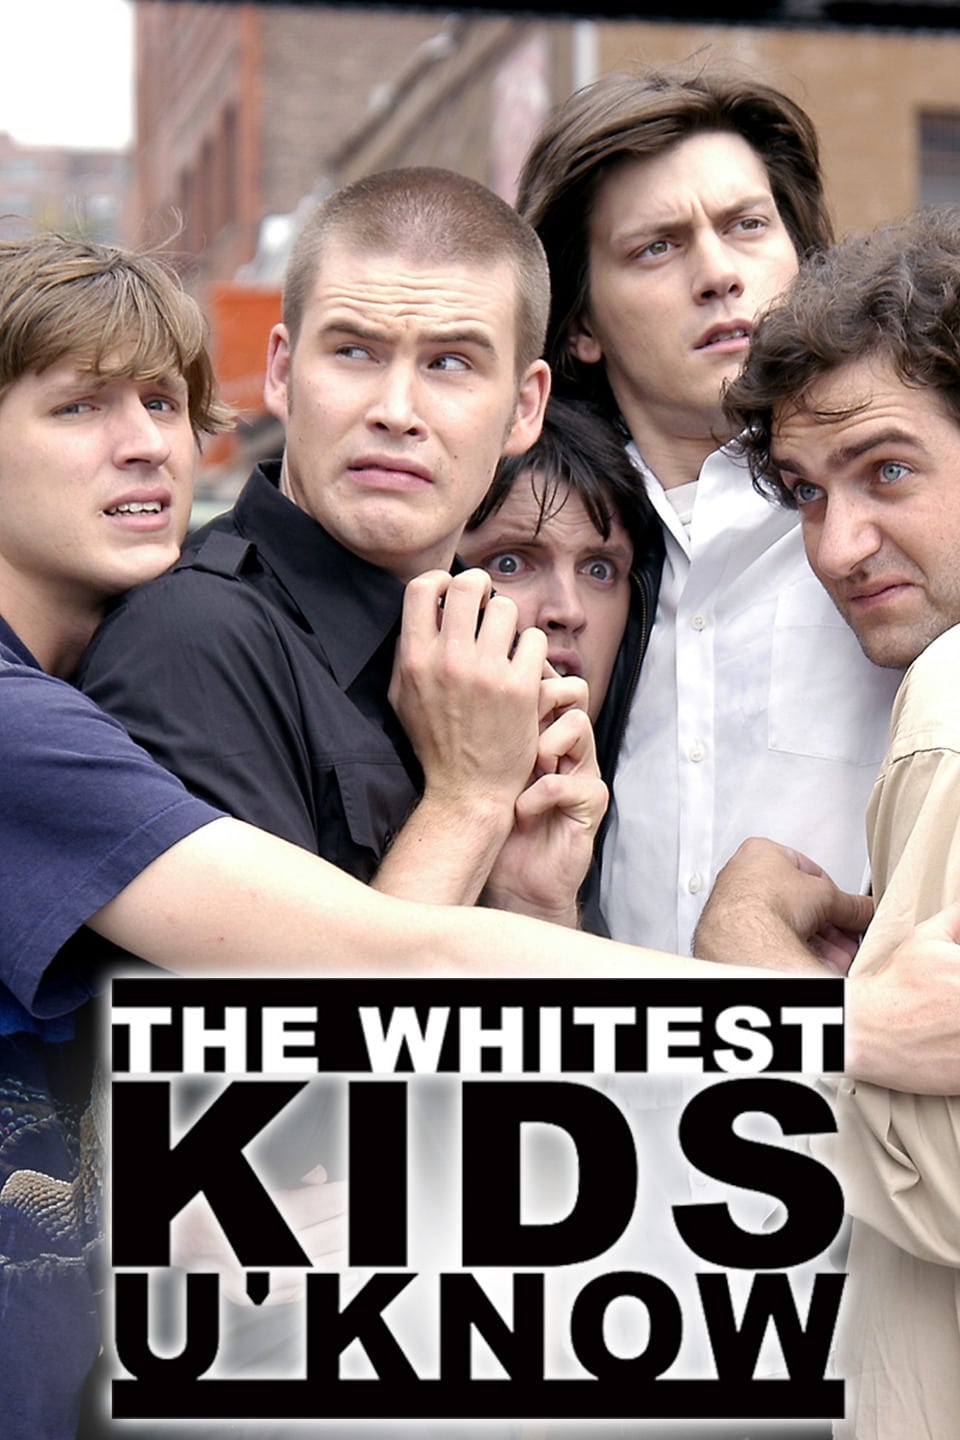 The Whitest Kids U' Know (2007)